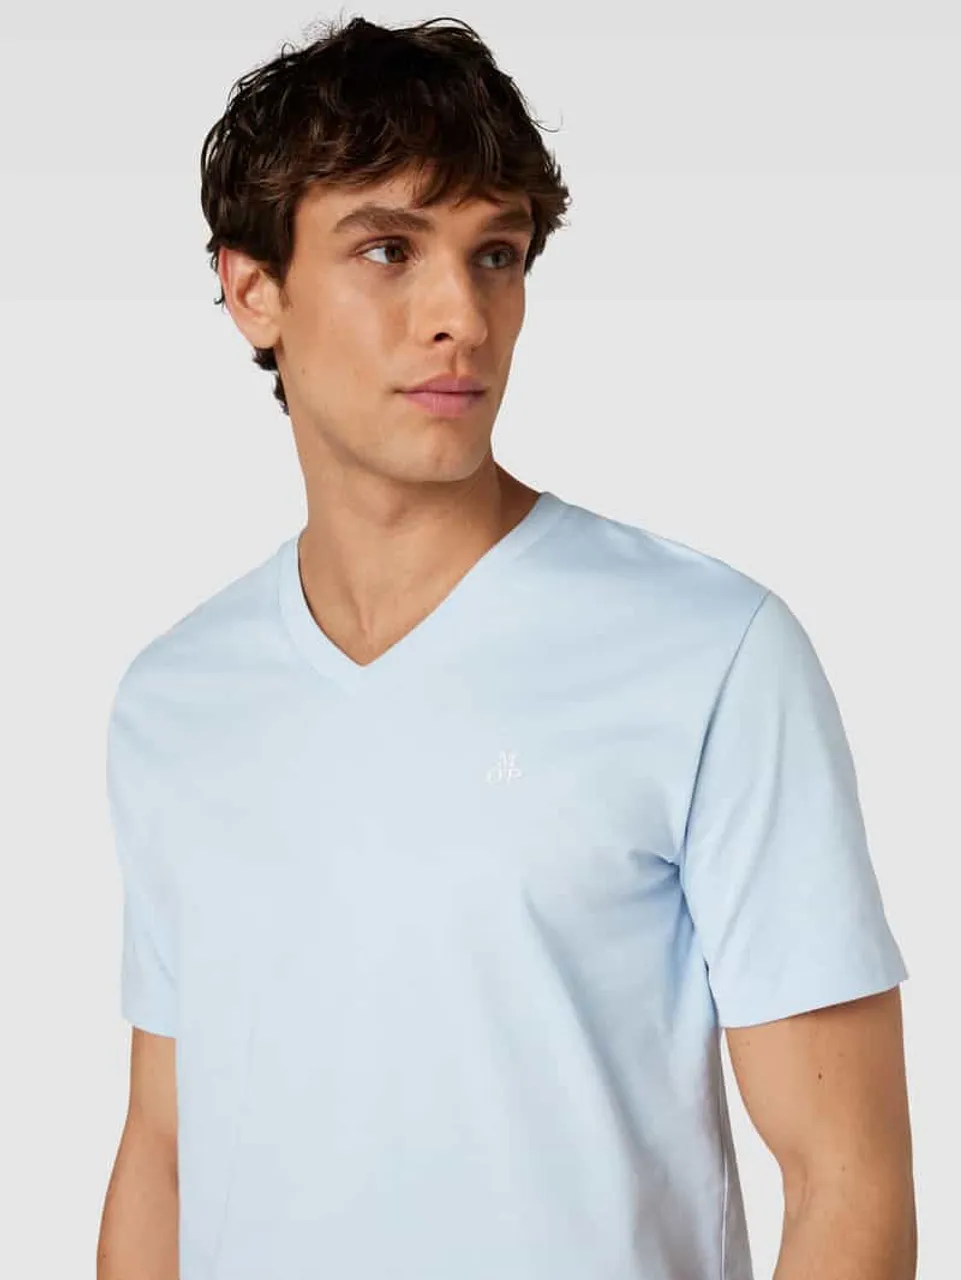 Marc O'Polo T-Shirt mit V-Ausschnitt in unifarbenem Design in Hellblau